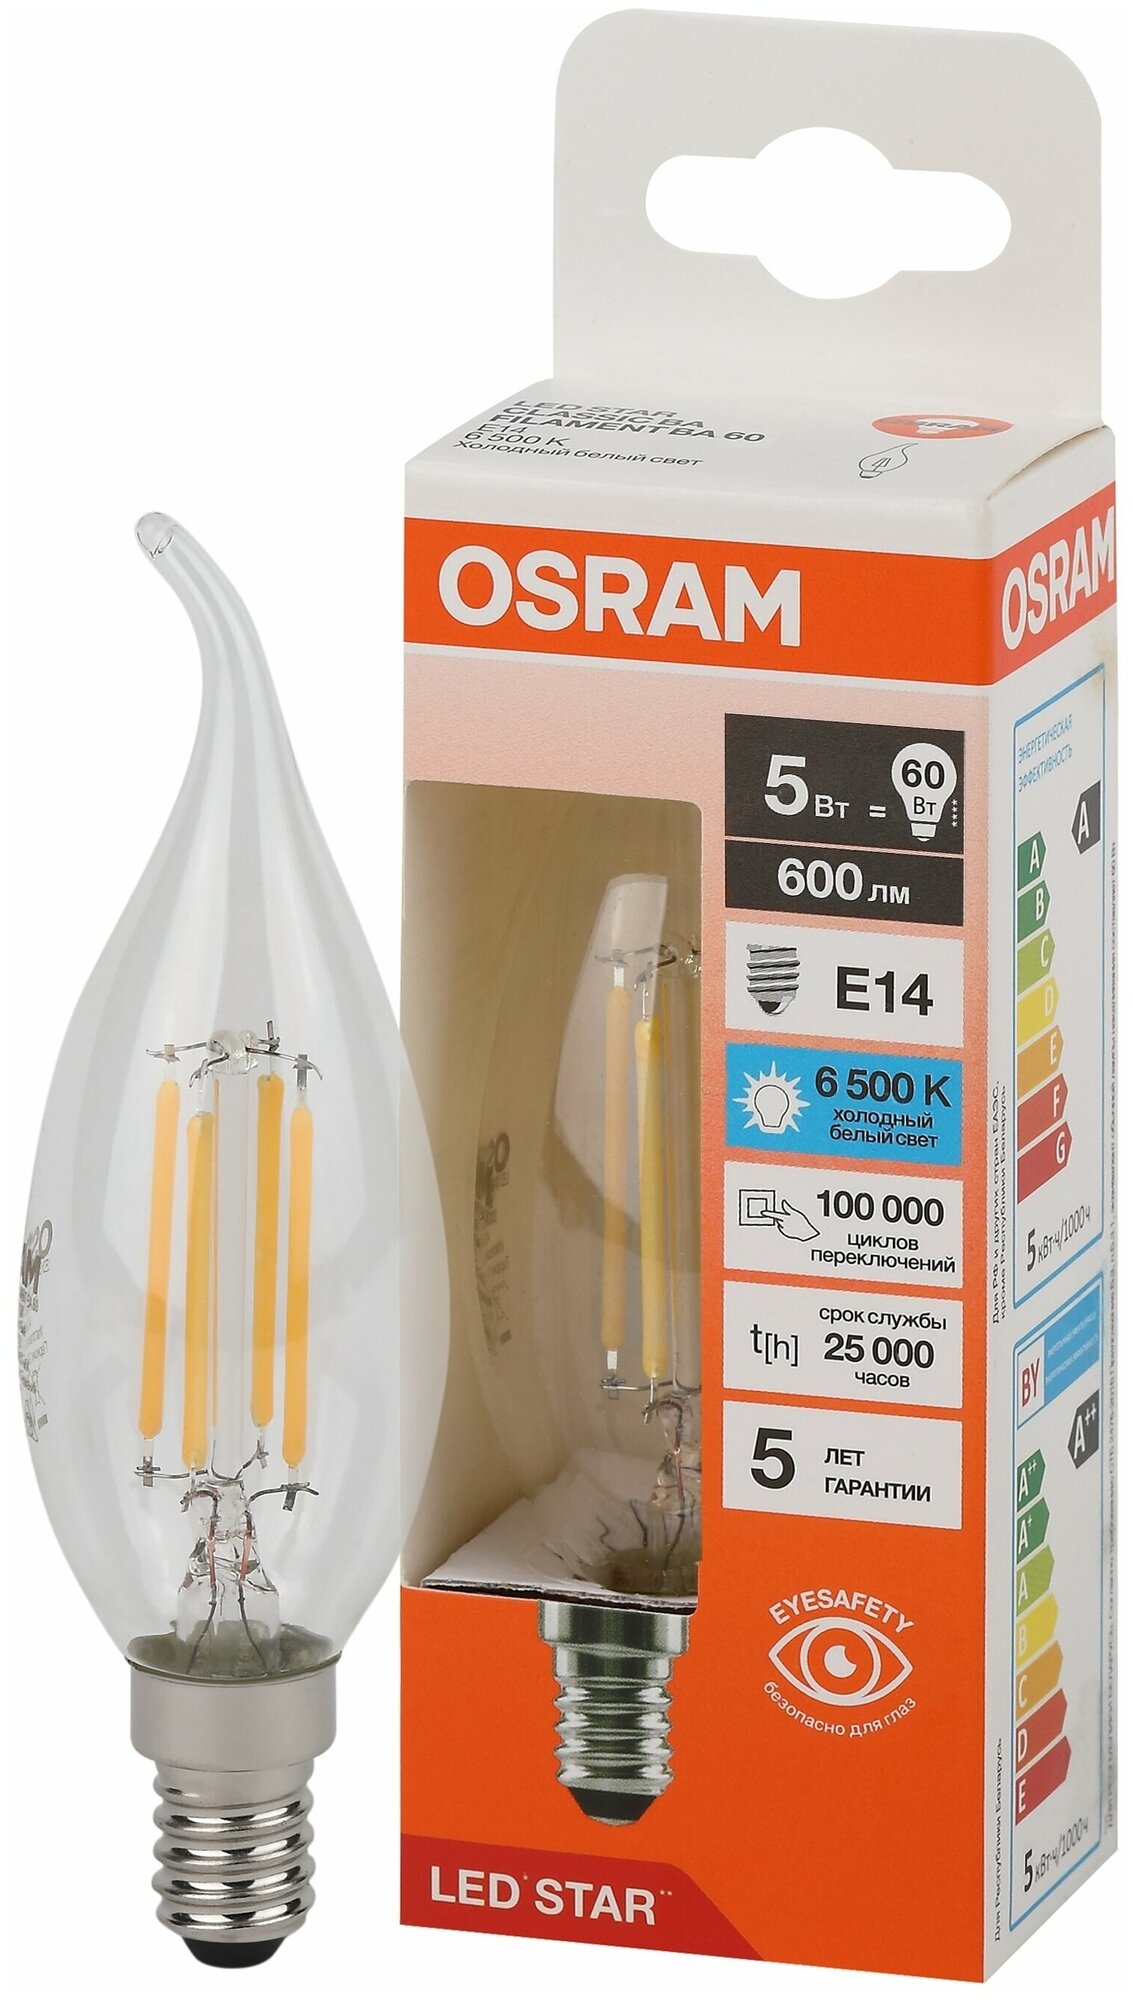 Лампа светодиодная Osram BA E14 220/240 В 5 Вт свеча 600 лм холодный белый свет - фото №1